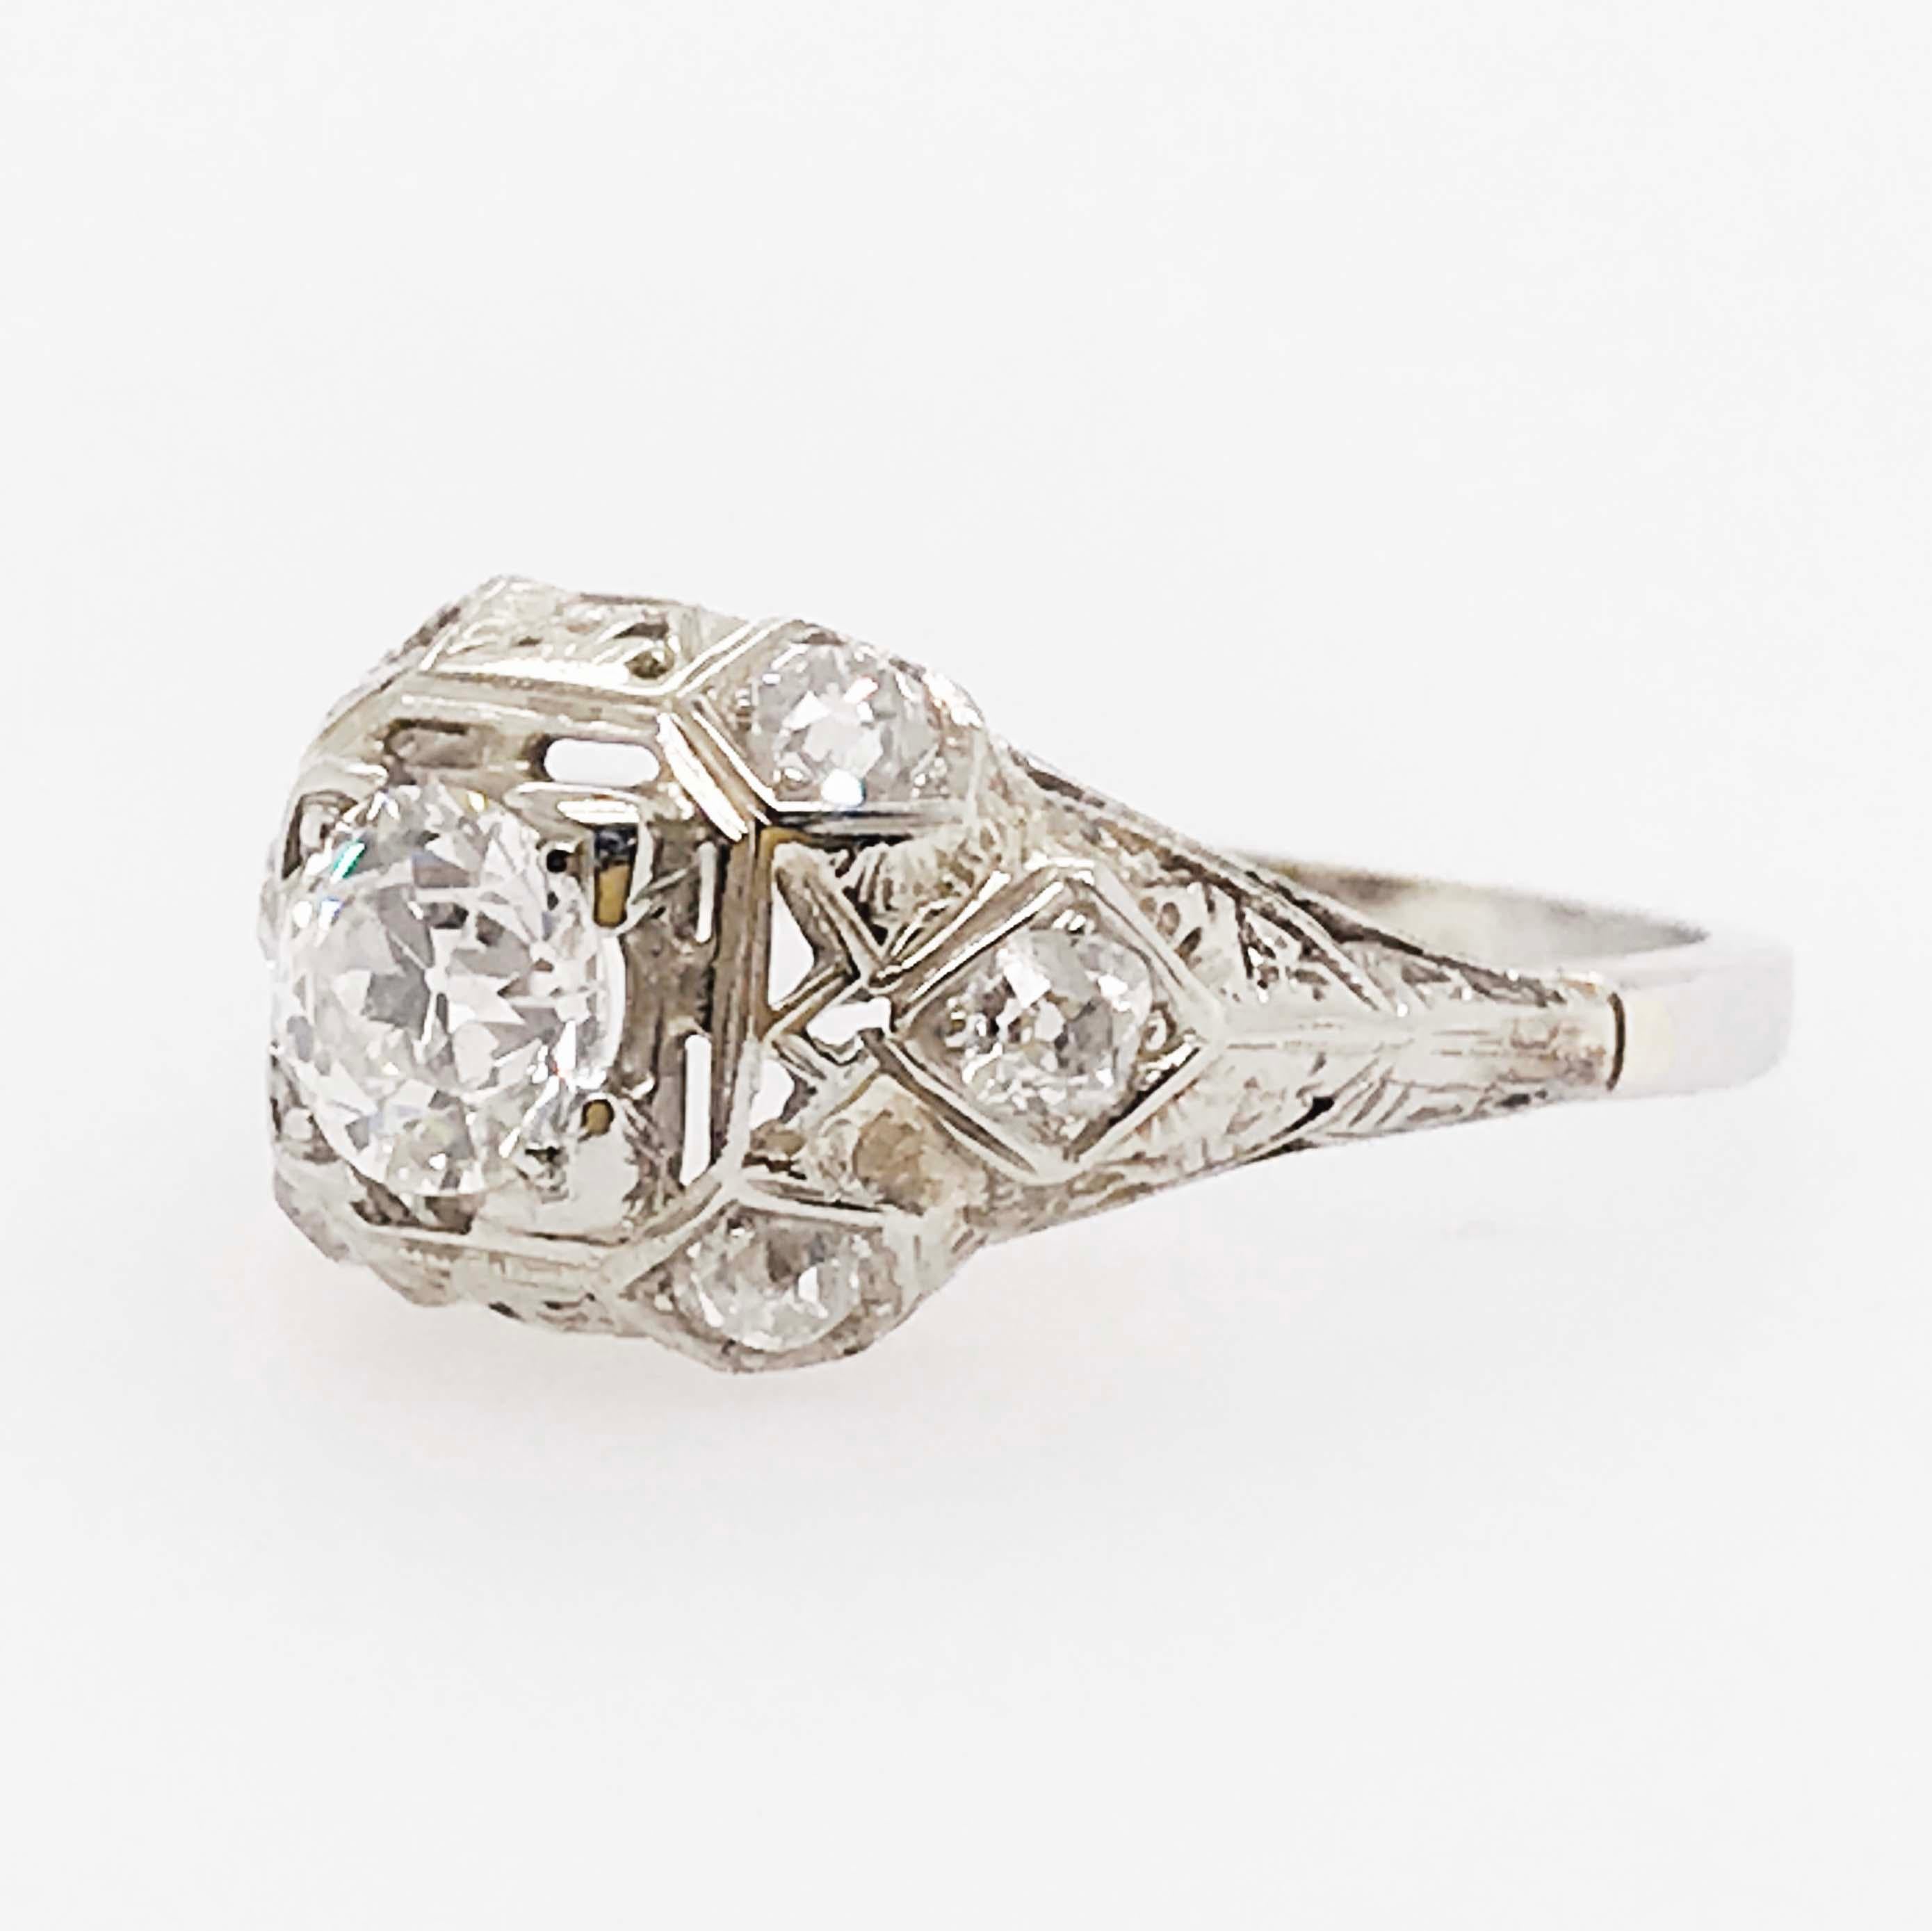 Old European Cut Diamond Platinum Ring, 1 Carat Old European Diamond and Mine Diamond, Art Deco